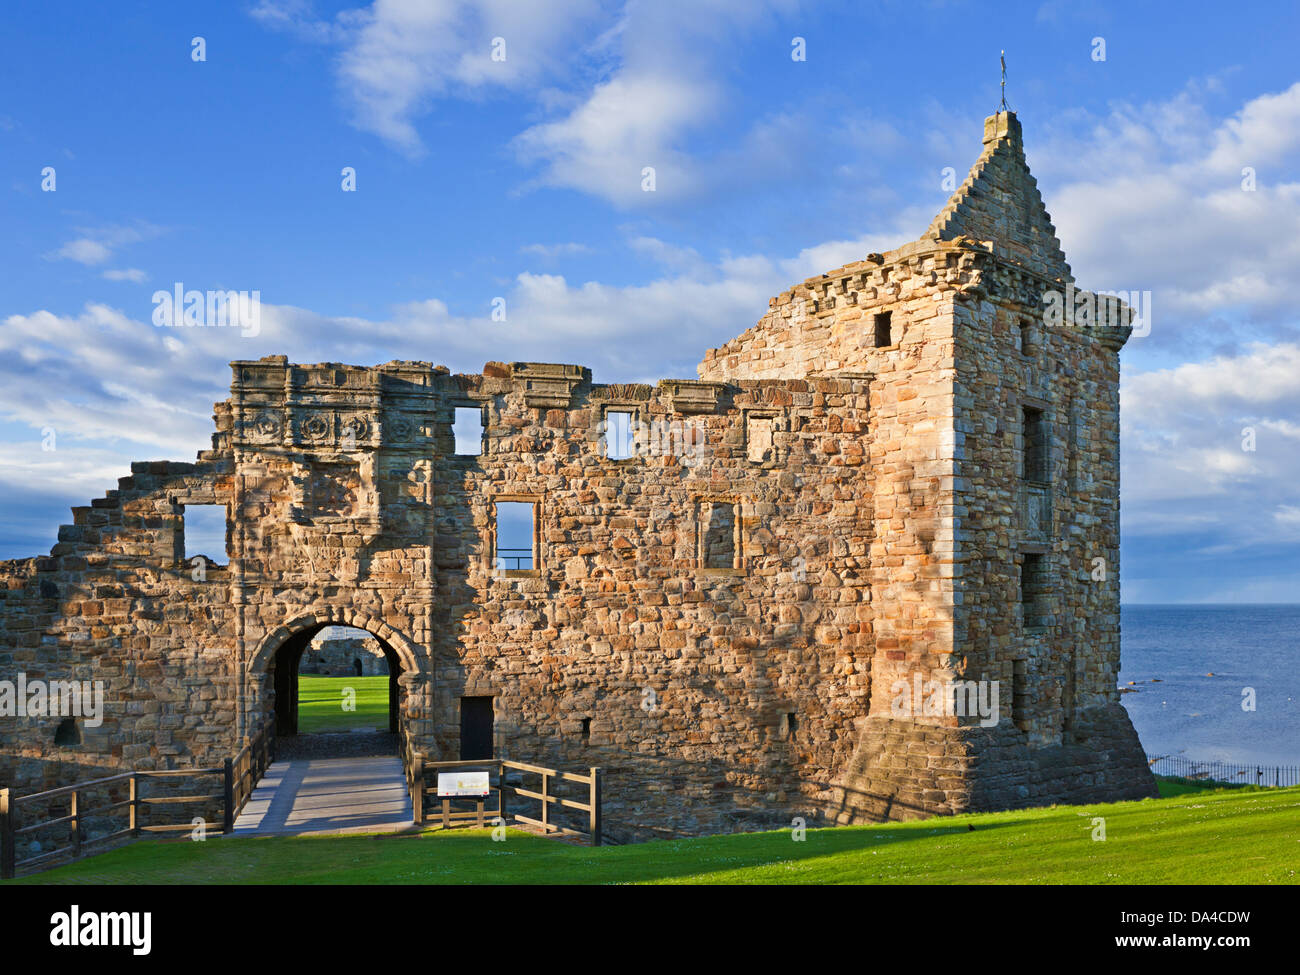 Château de St Andrews une ruine pittoresque dans la côte royale Burgh de St Andrews Fife Ecosse Royaume-Uni GB Europe Banque D'Images